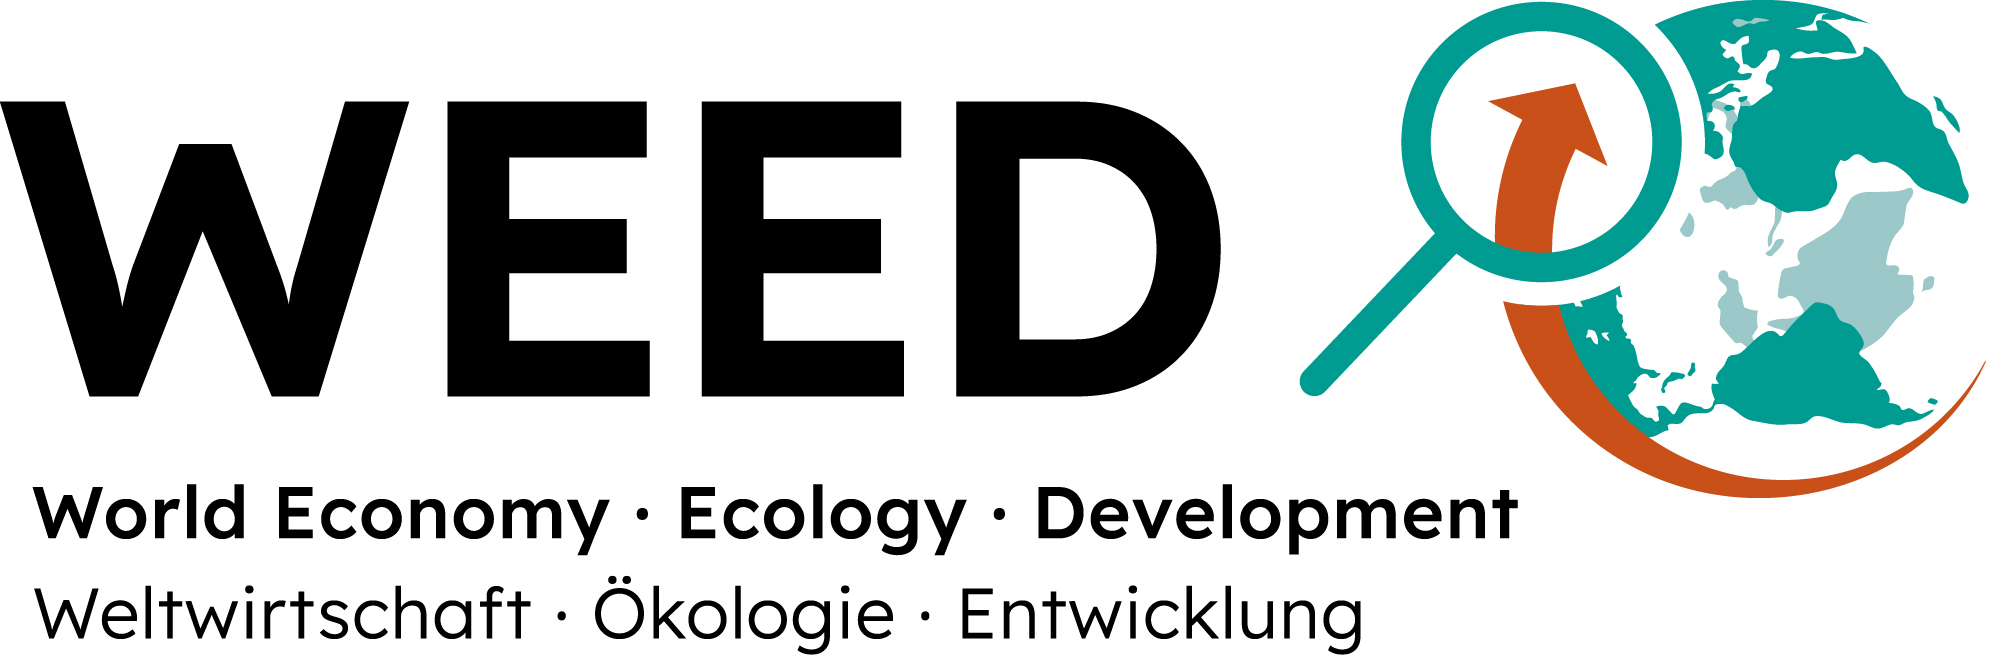 Logo WEED e.V. – World, Economy, Ecology and Development (Weltwirtschaft, Ökonomie und Entwicklung)